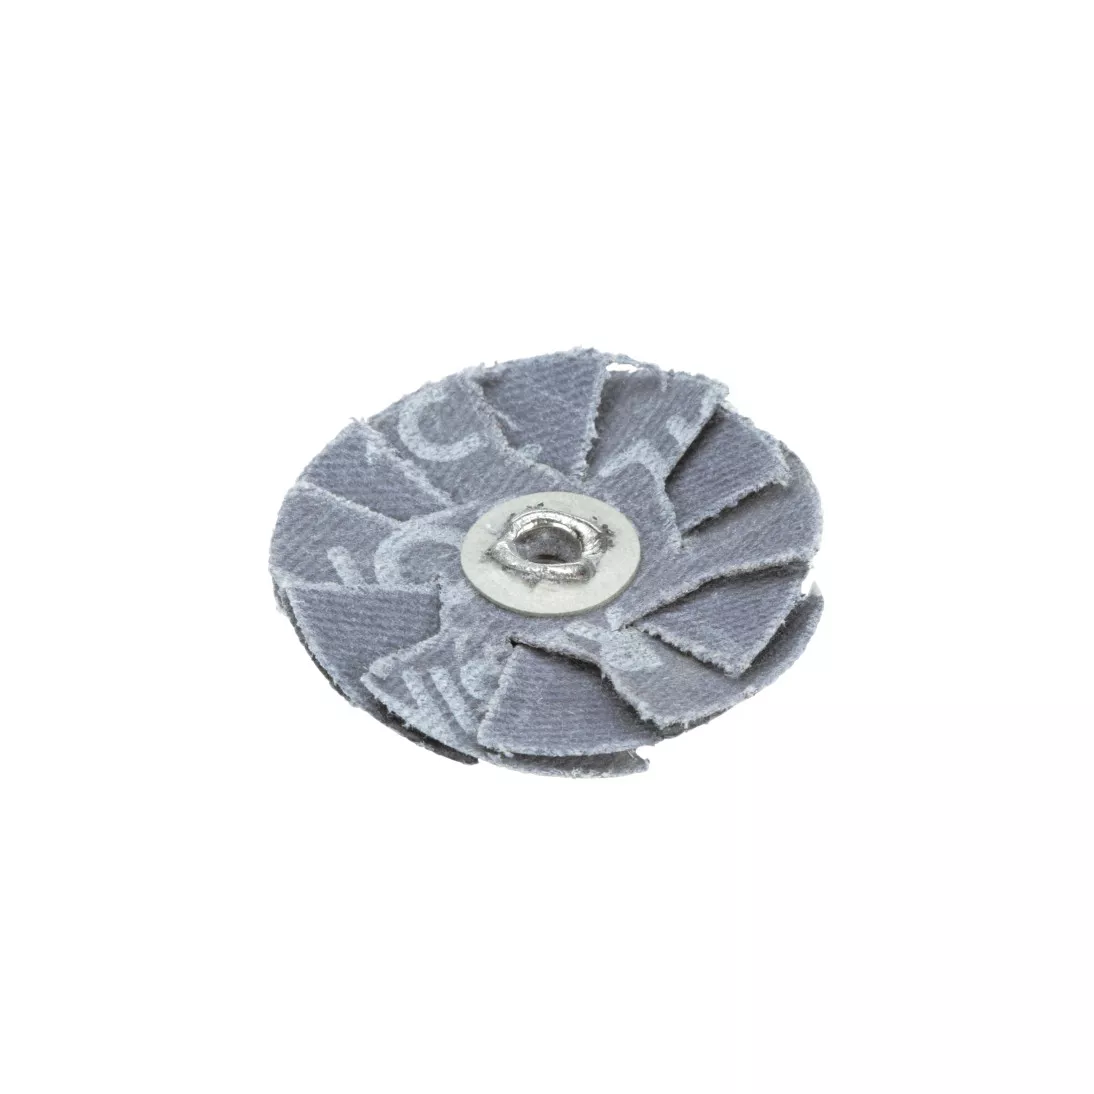 Standard Abrasives™ Silicon Carbide Overlap Disc, 730471, 80, 1-1/2 in x
8-32 x 2 Ply, 100 ea/Case